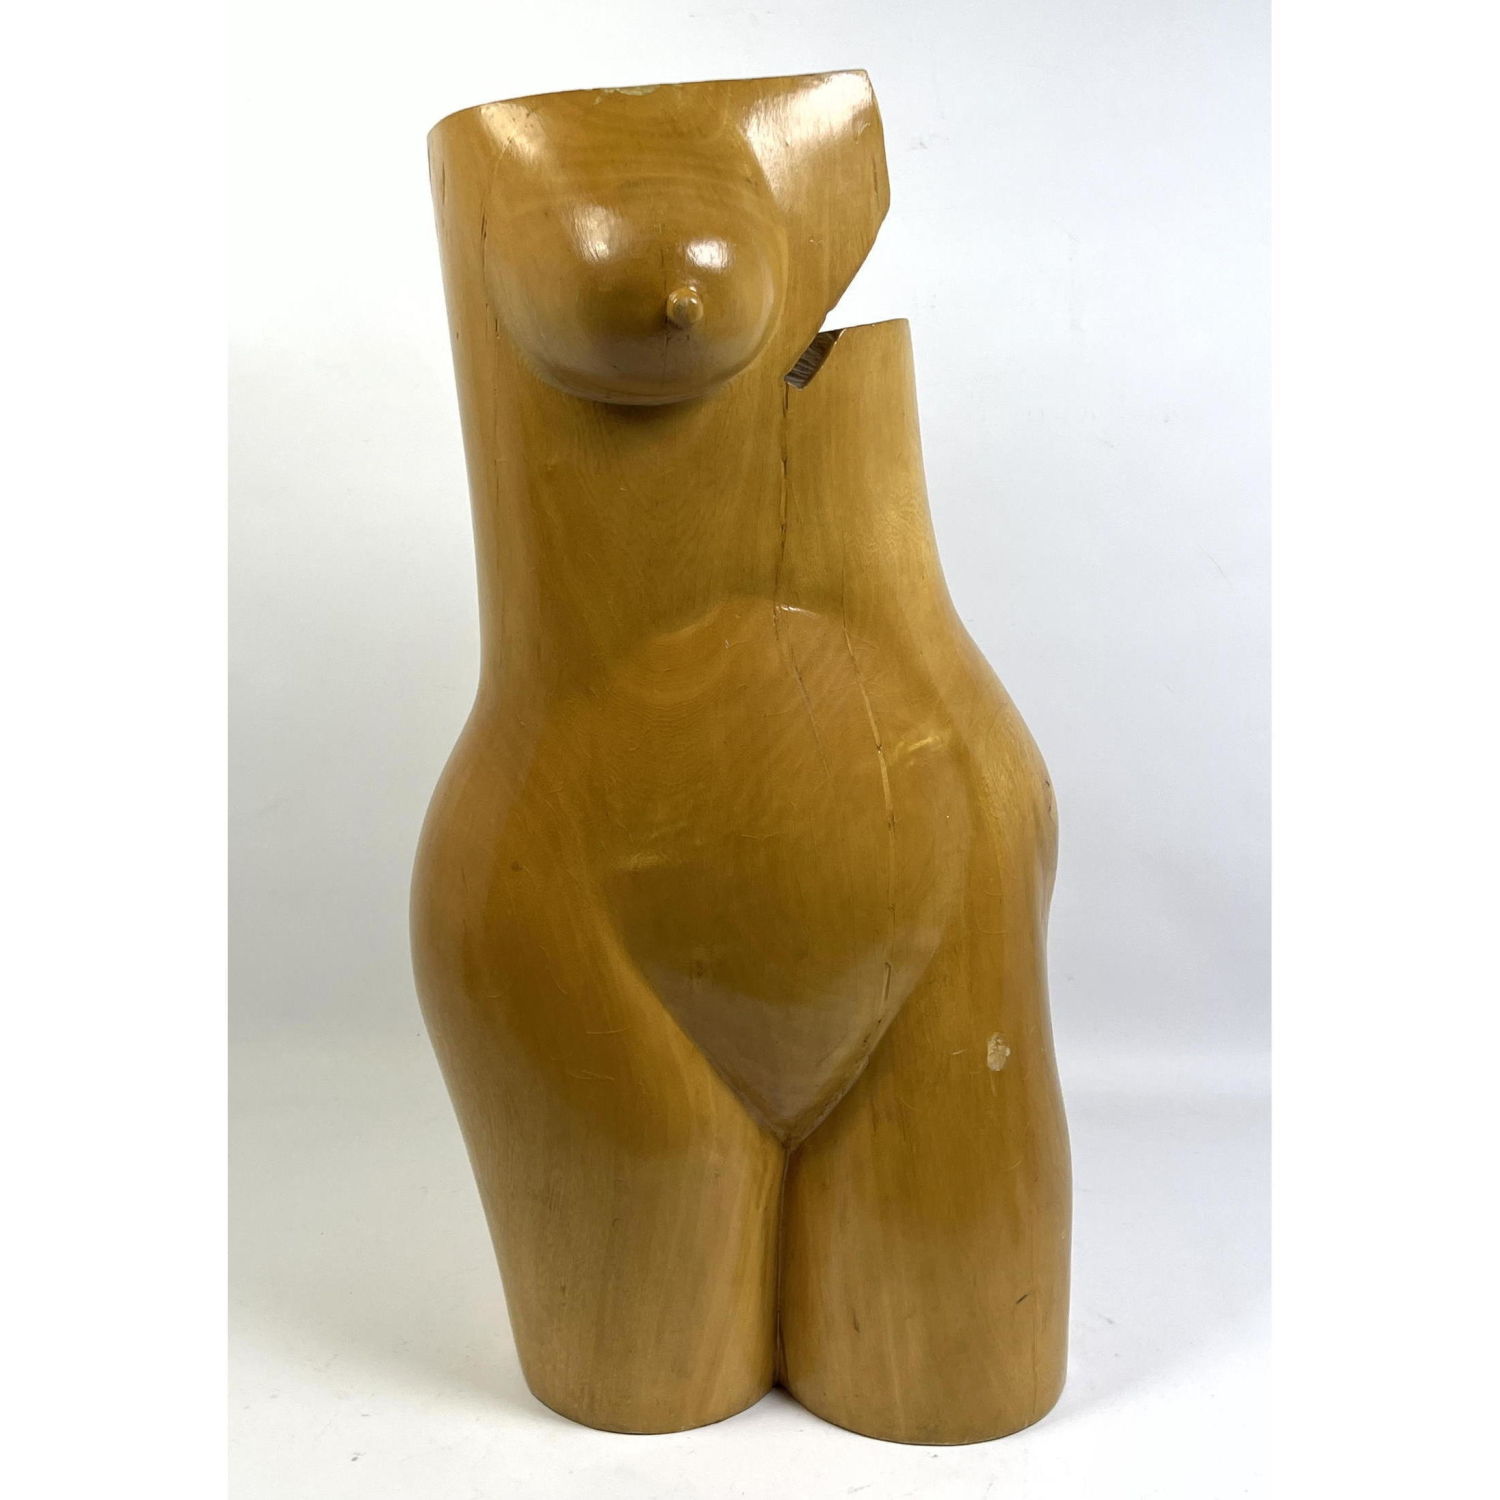 Carved wood Female Torso sculpture.